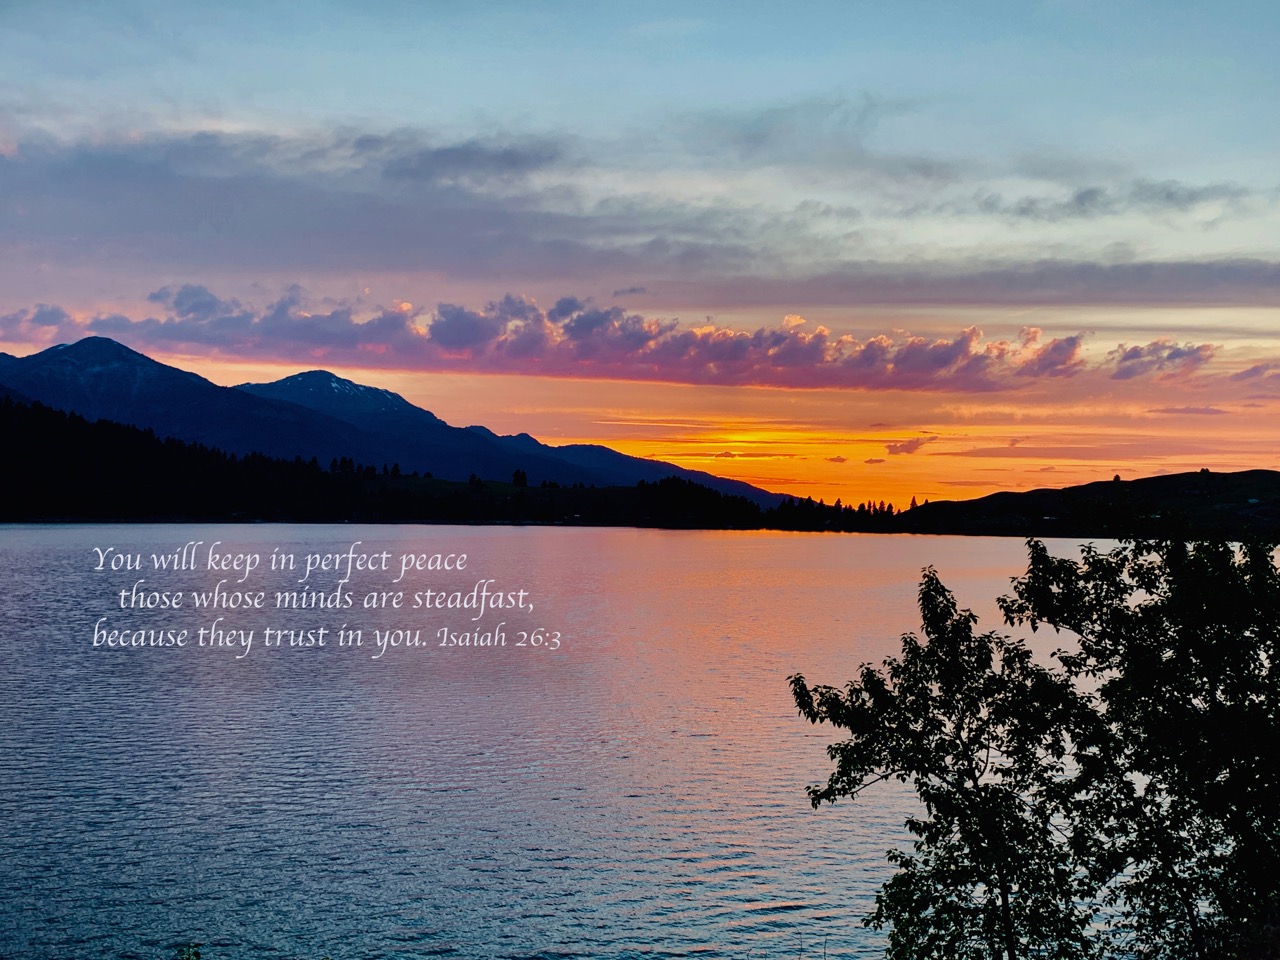 Wallowa lake sunset